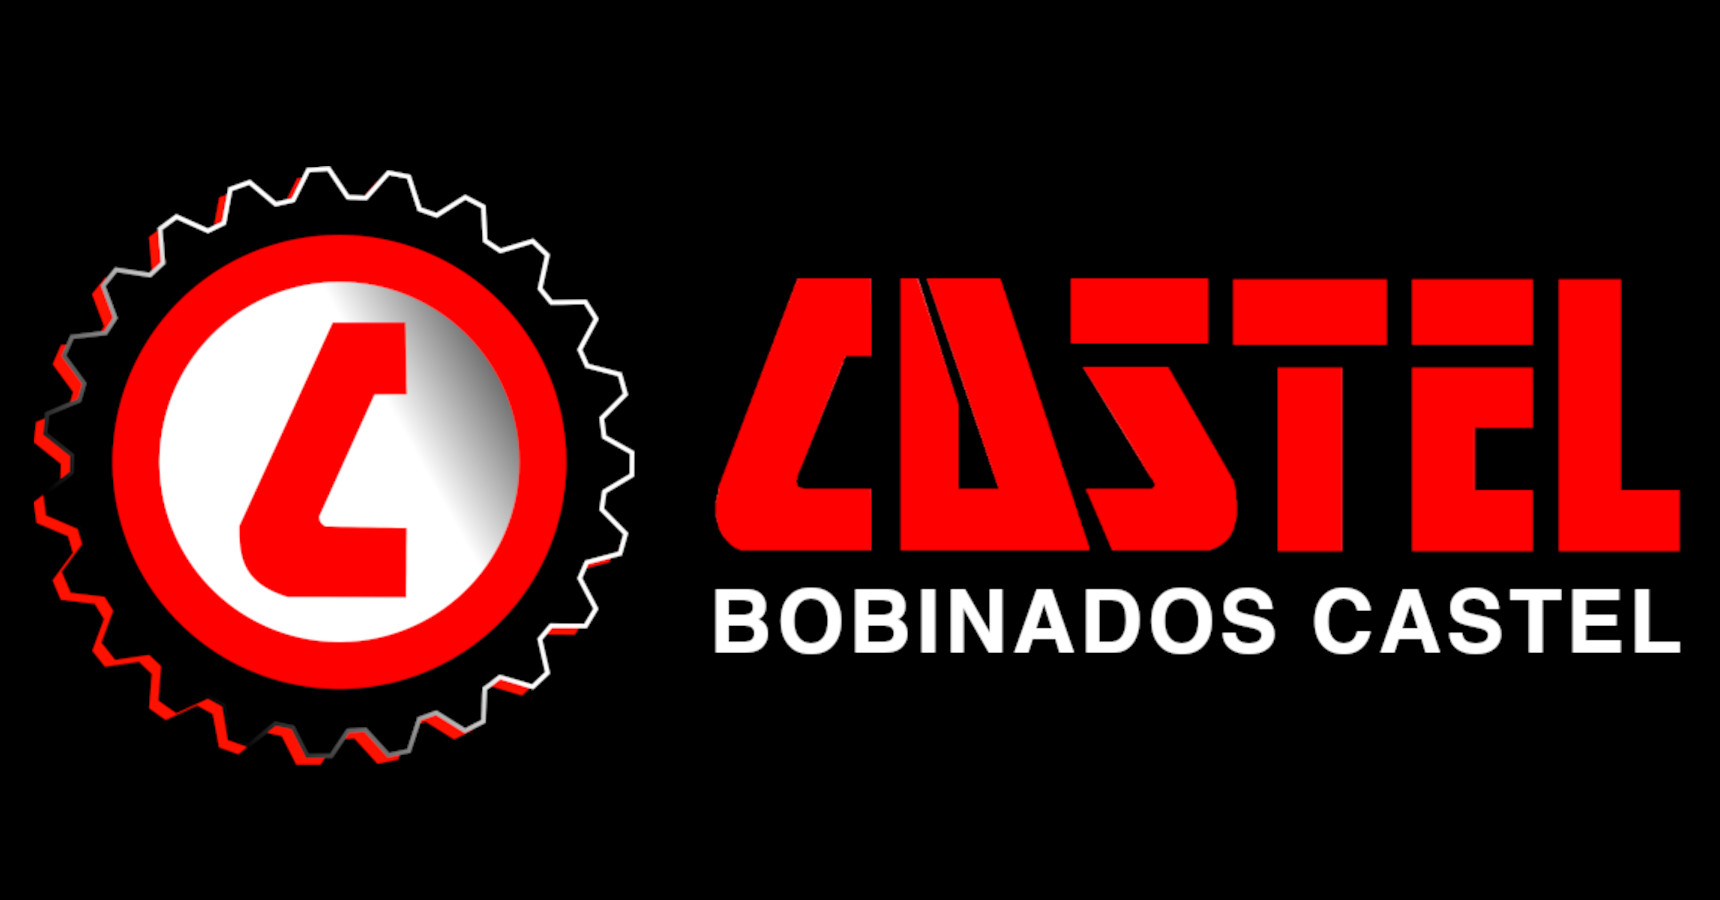 Bobinados Castel